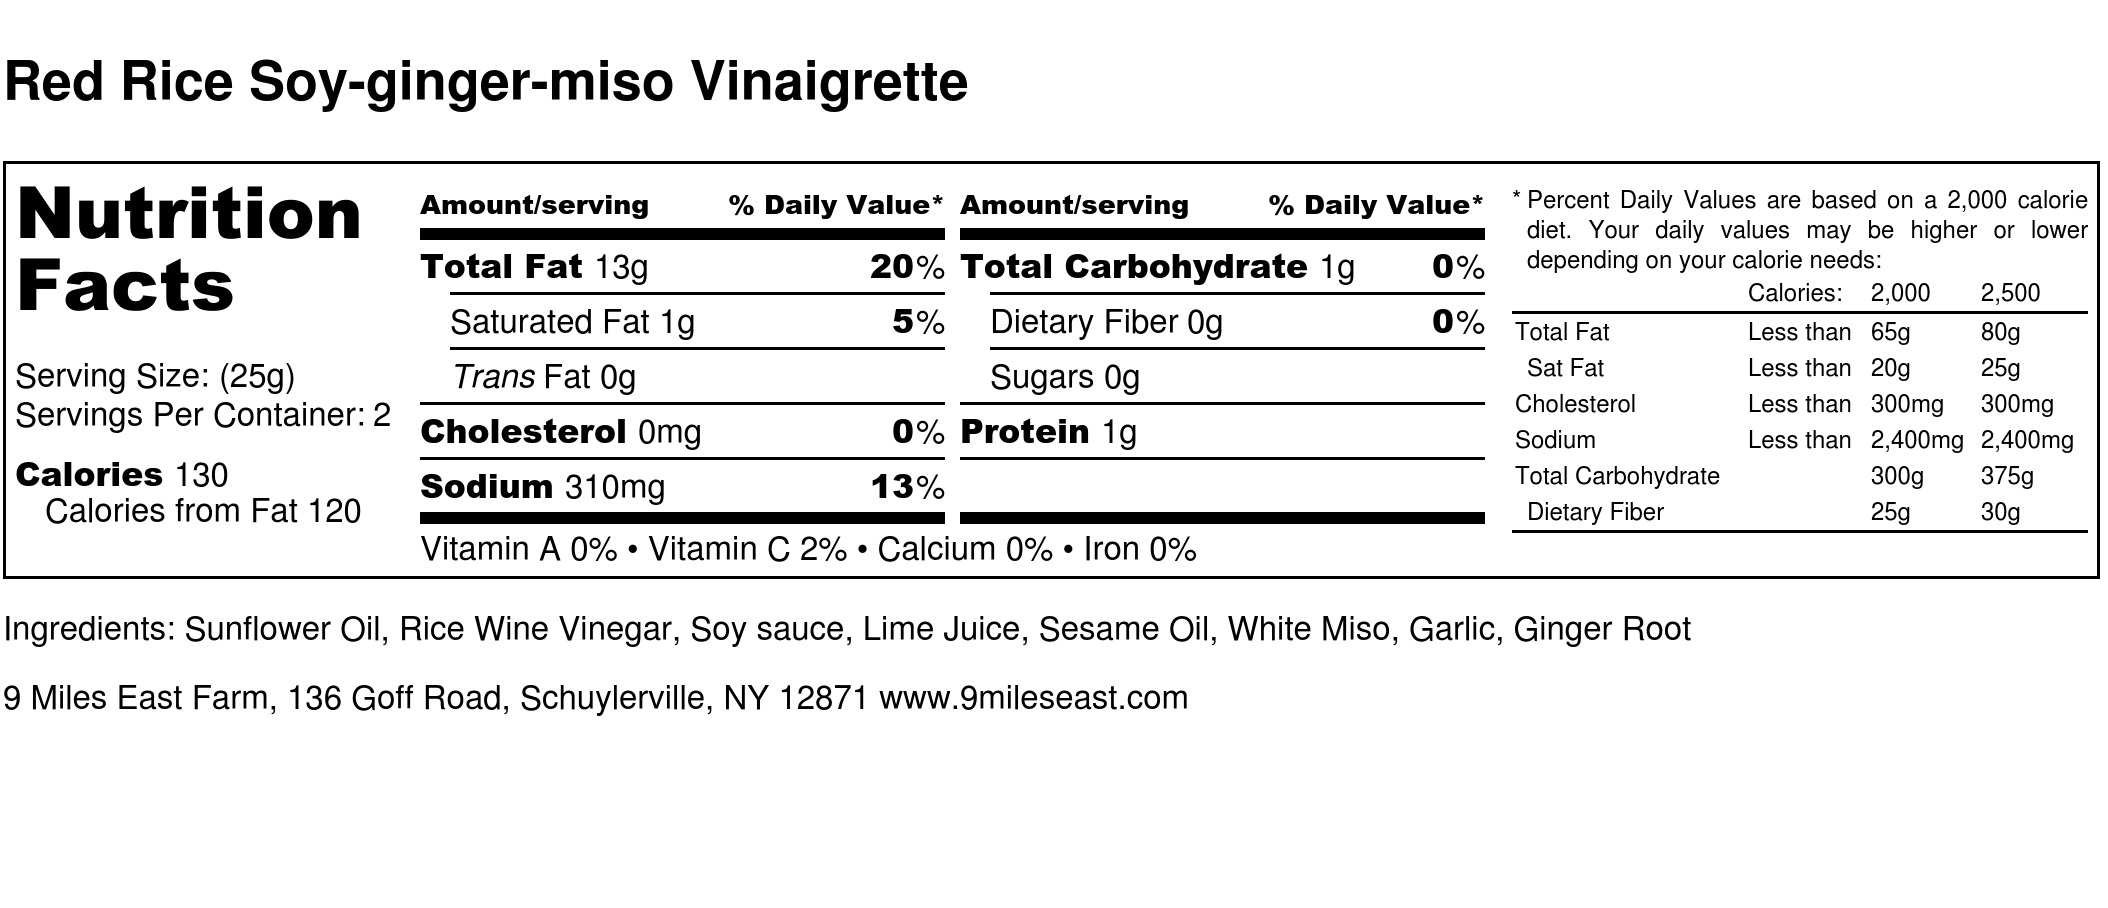 Red Rice Soy-ginger-miso Vinaigrette - Nutrition Label.jpg